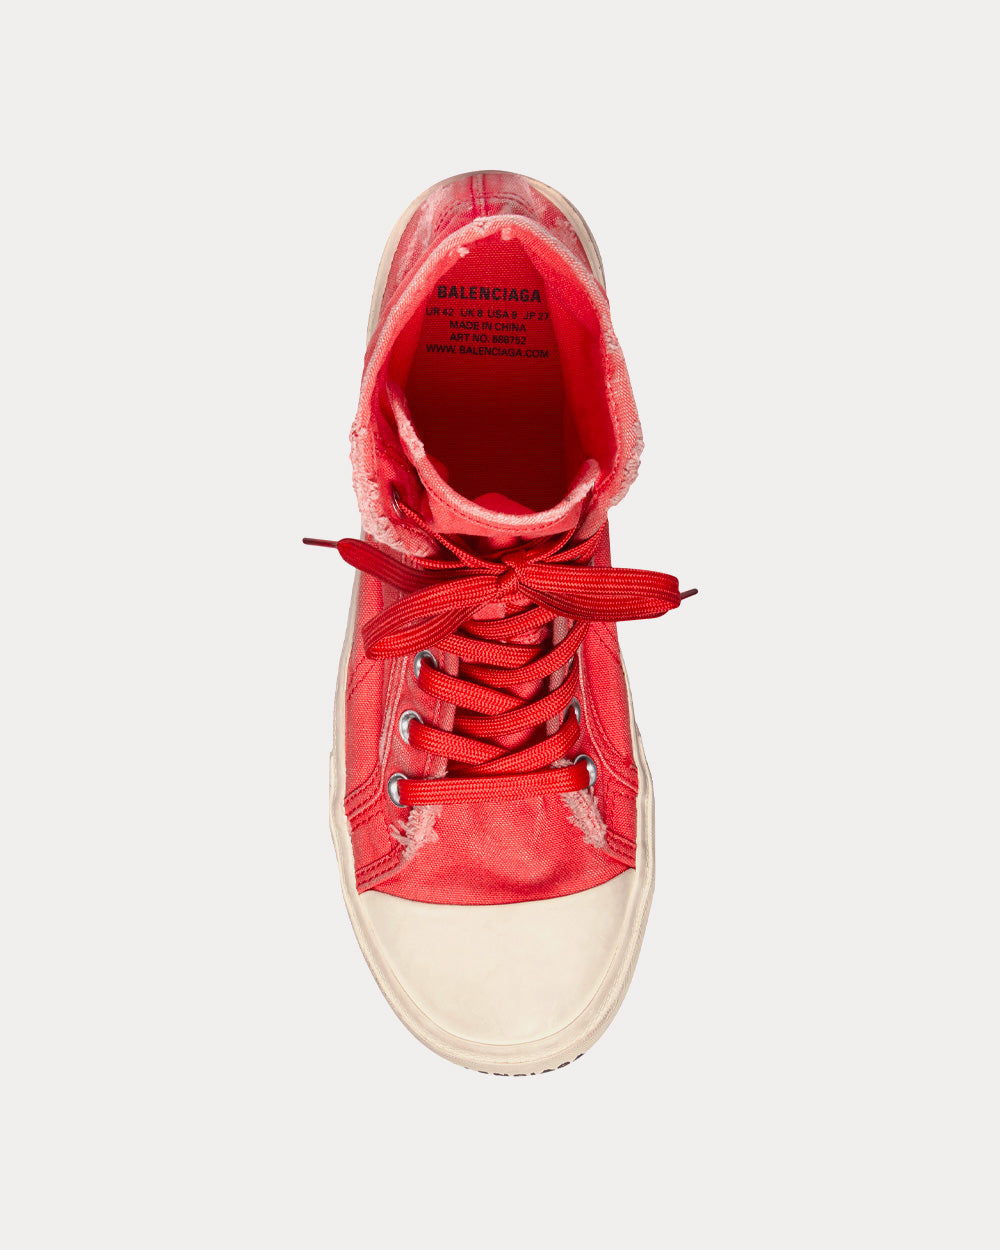 Balenciaga - Paris Red High Top Sneakers